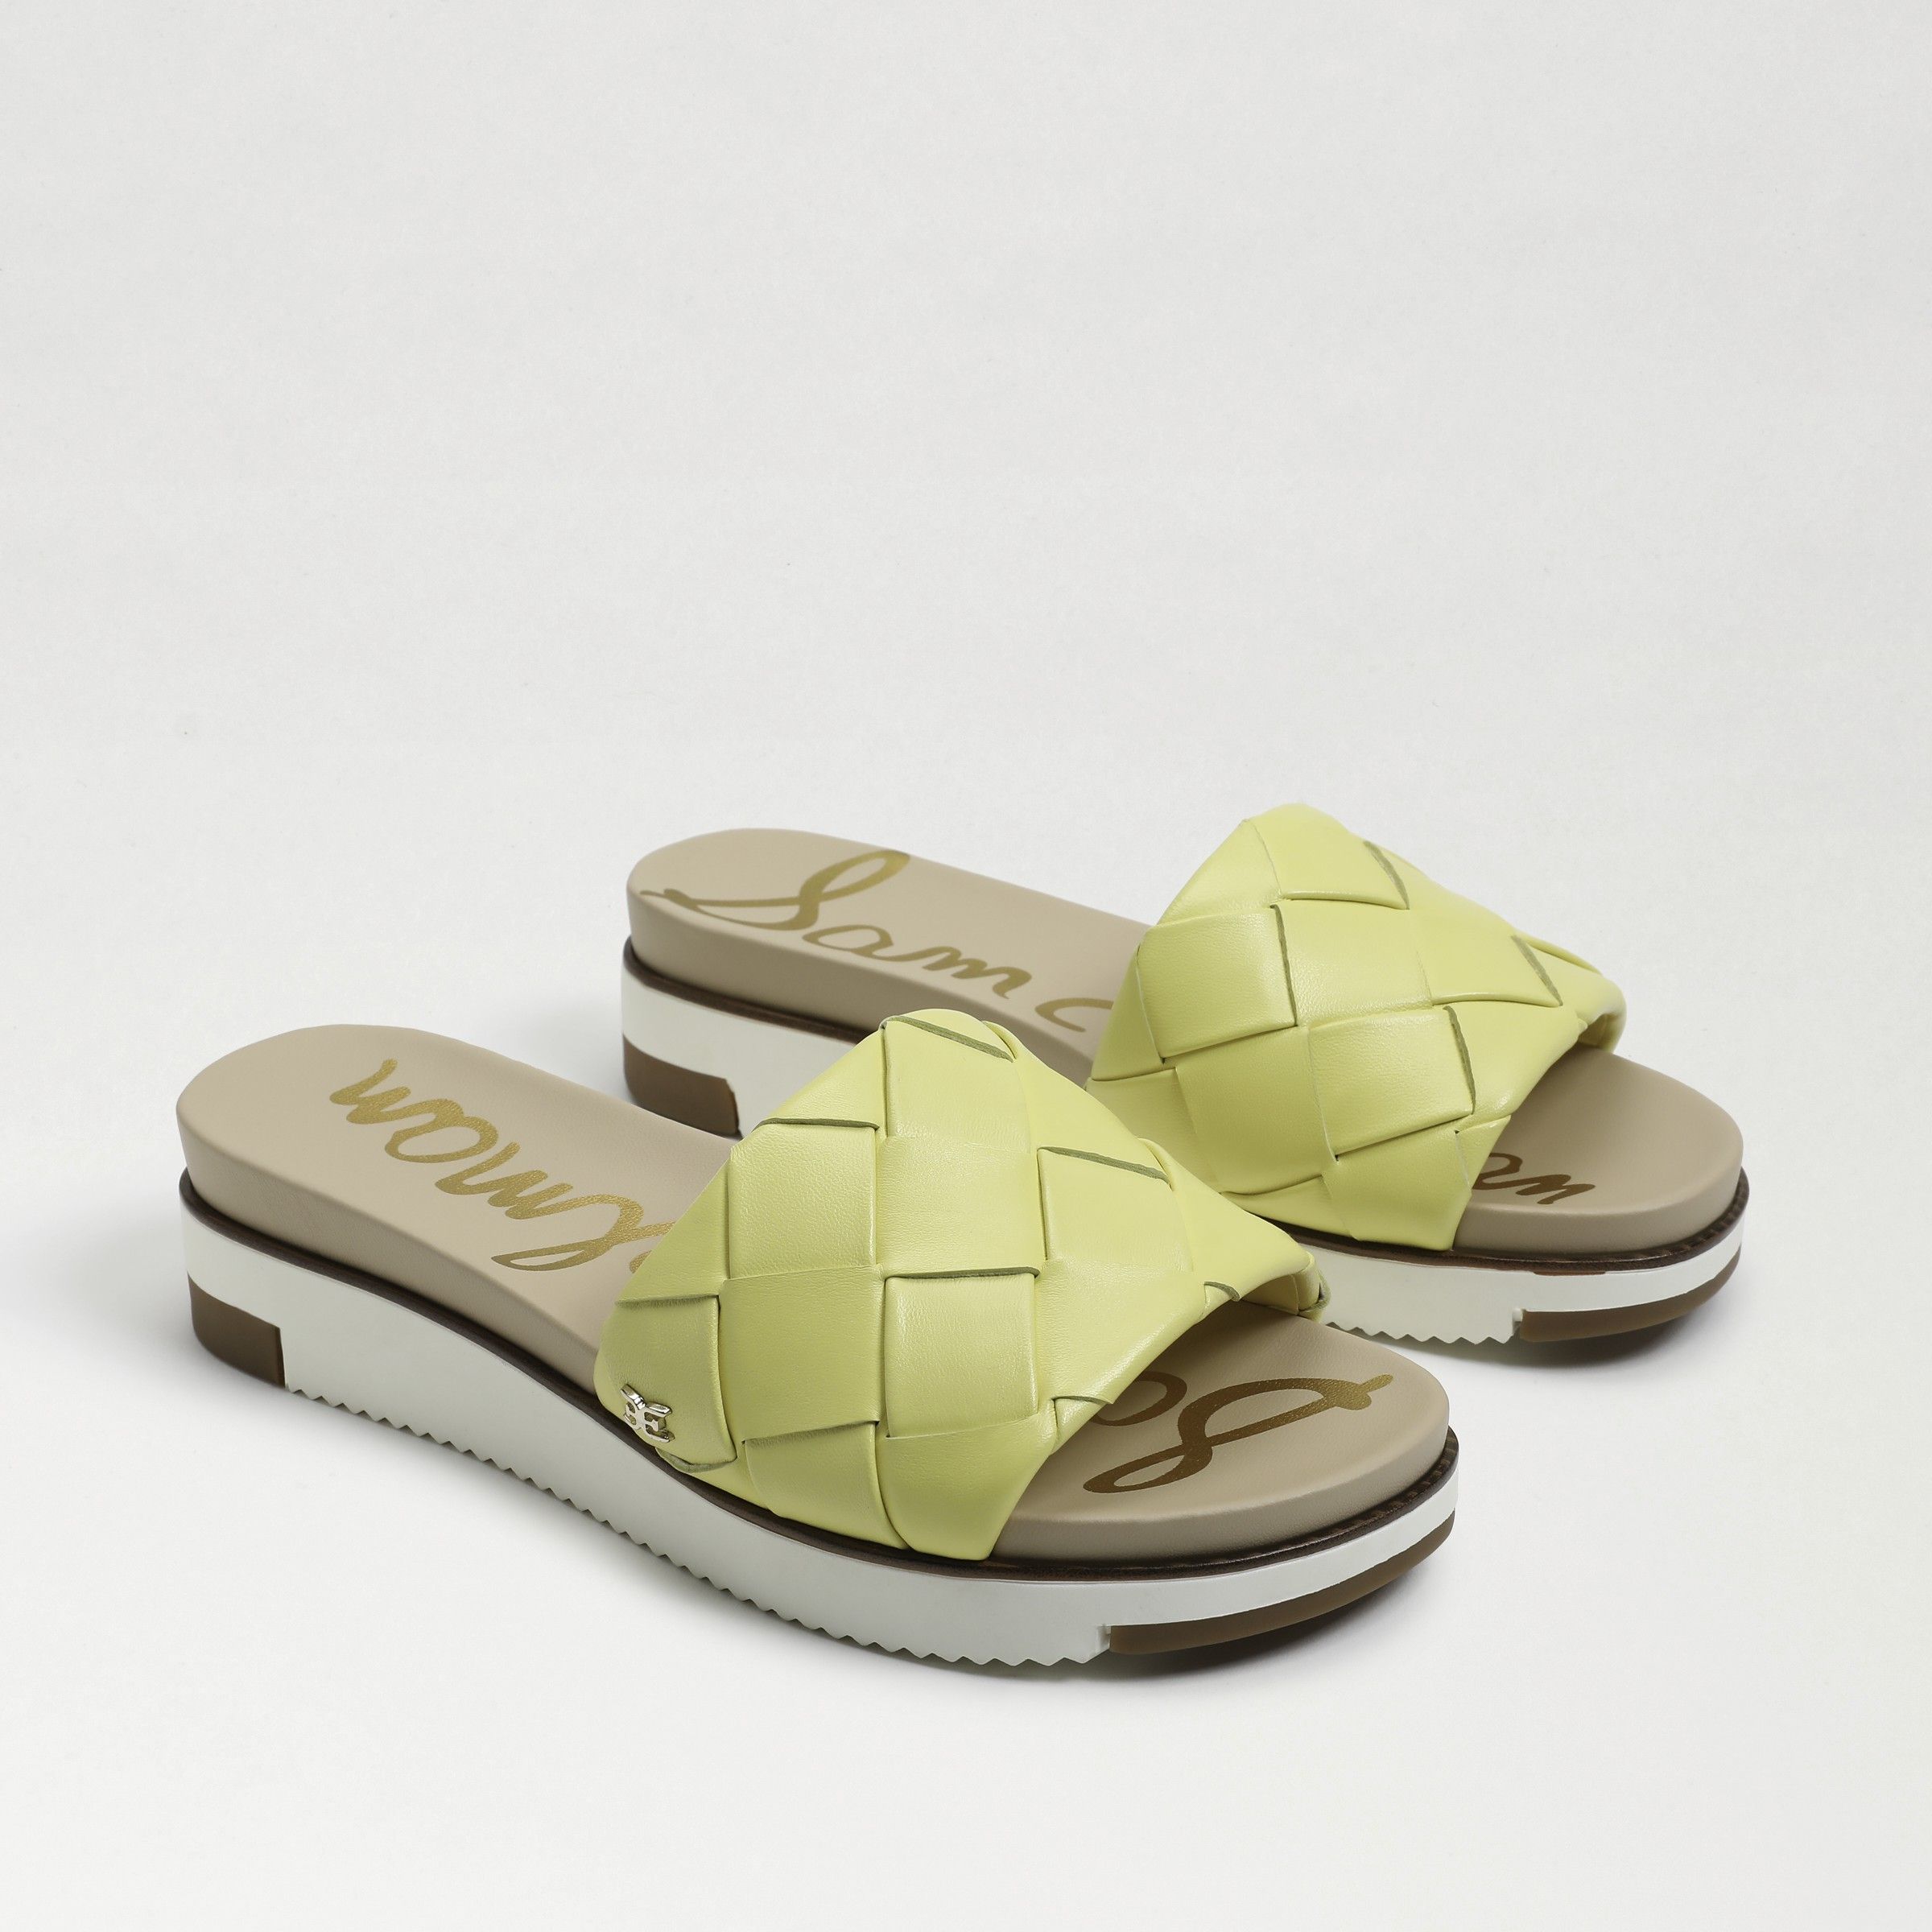 Sam Edelman Adaley Woven Slide Sandal Butter Yellow Leather | Sam Edelman